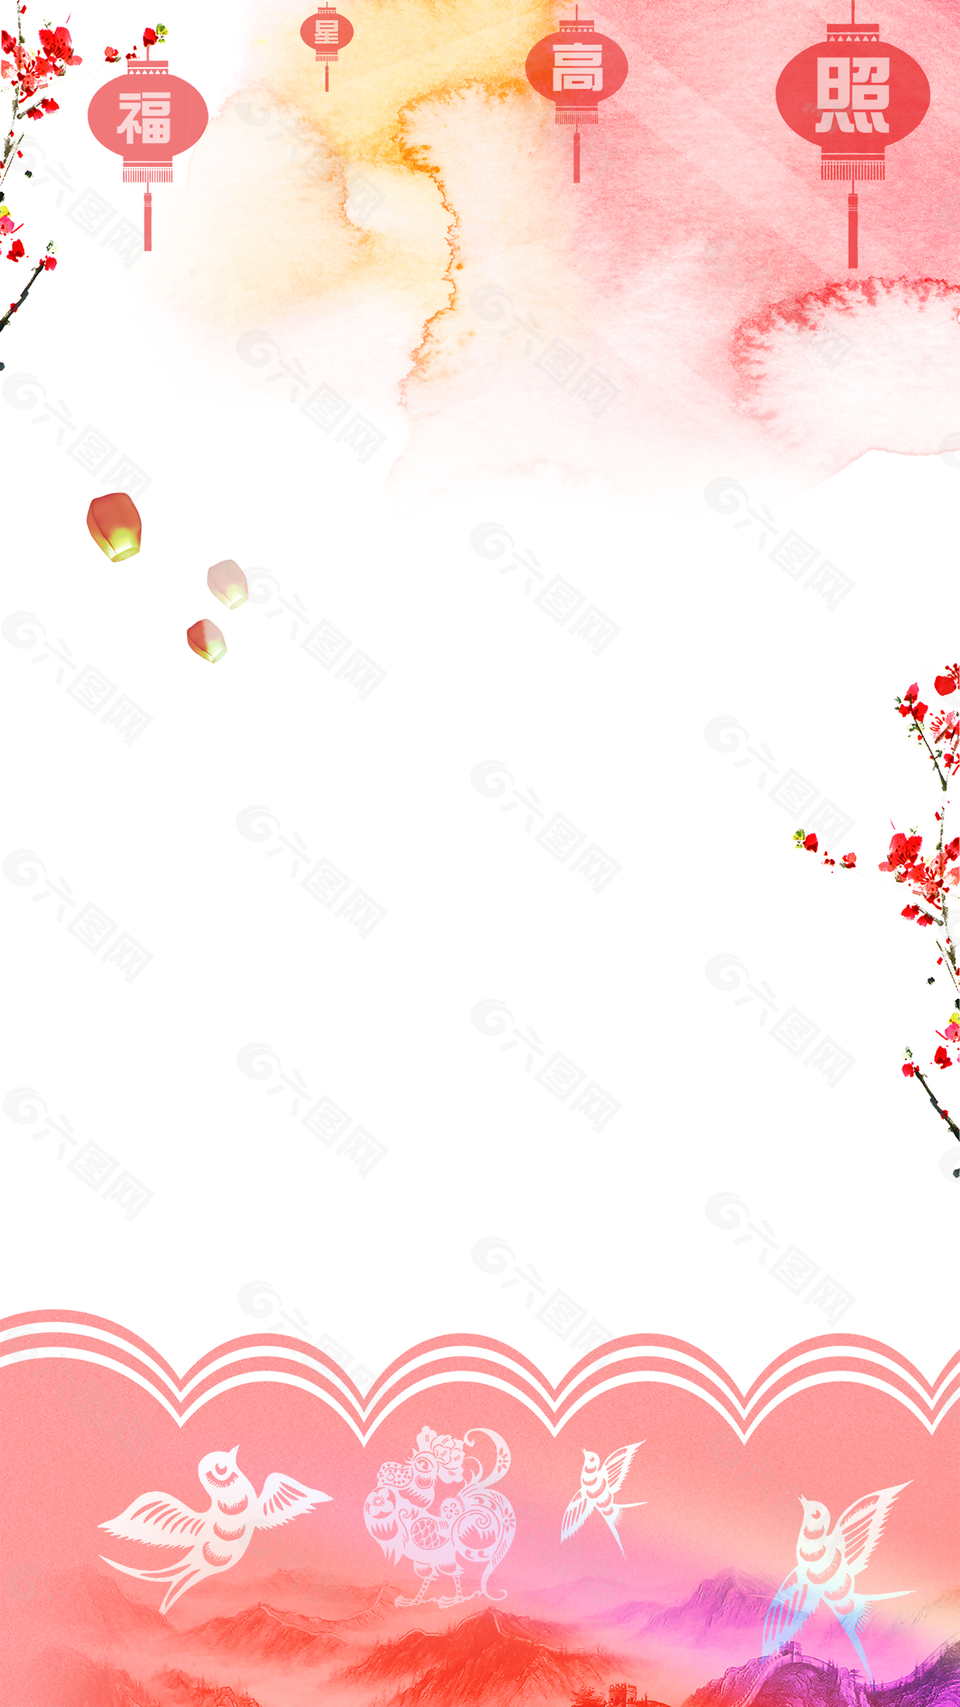 彩绘鸡年春节福星高照背景